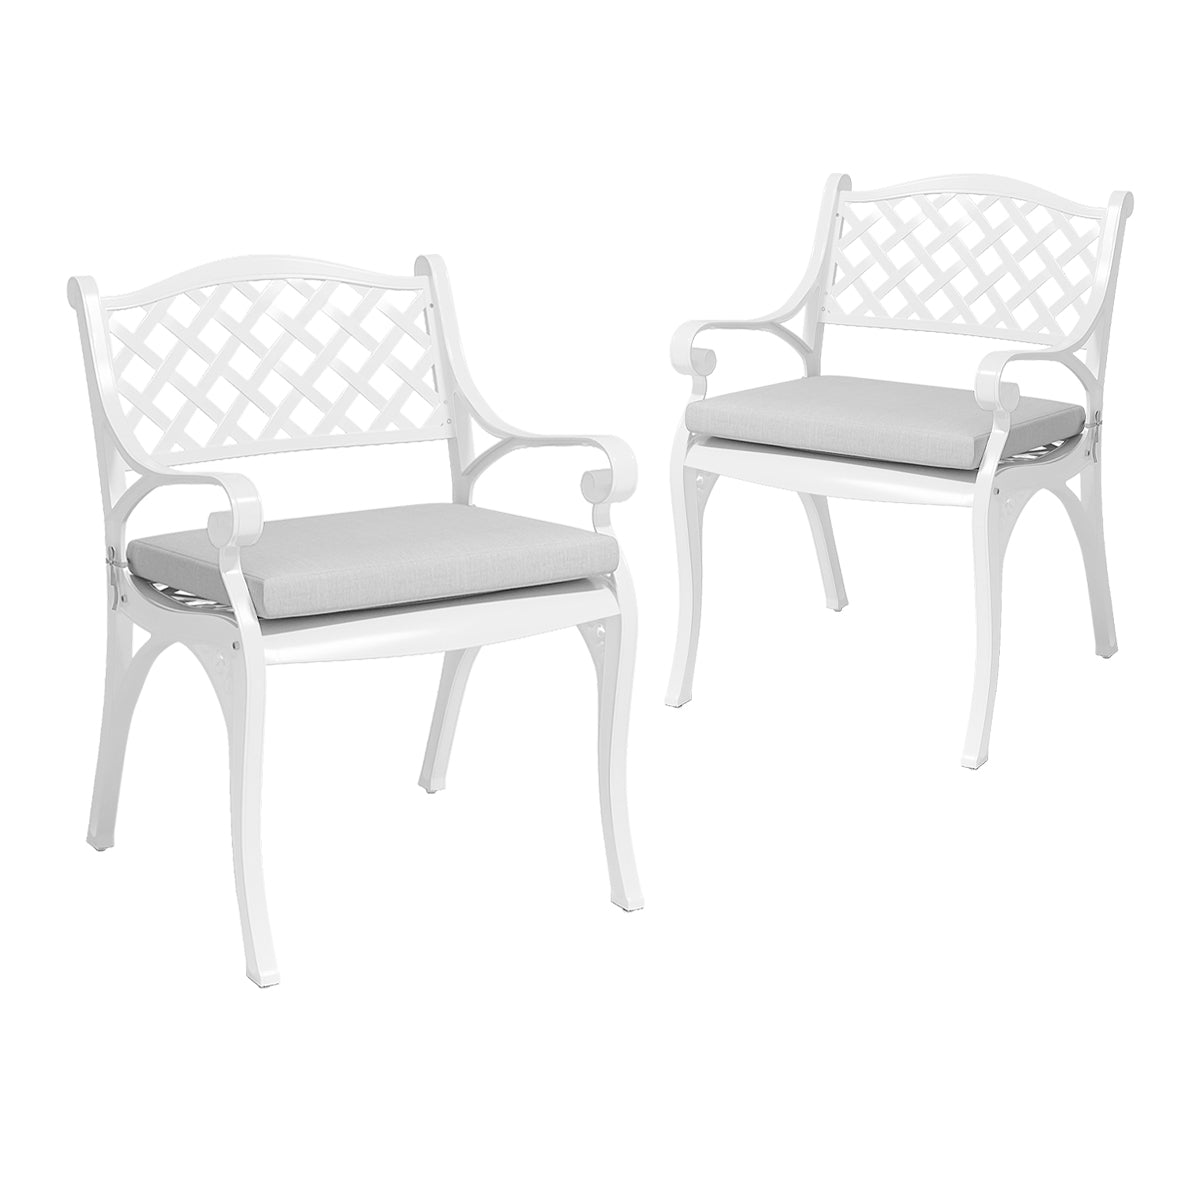 Retro Set of 2 Cast Aluminum Garden Chairs